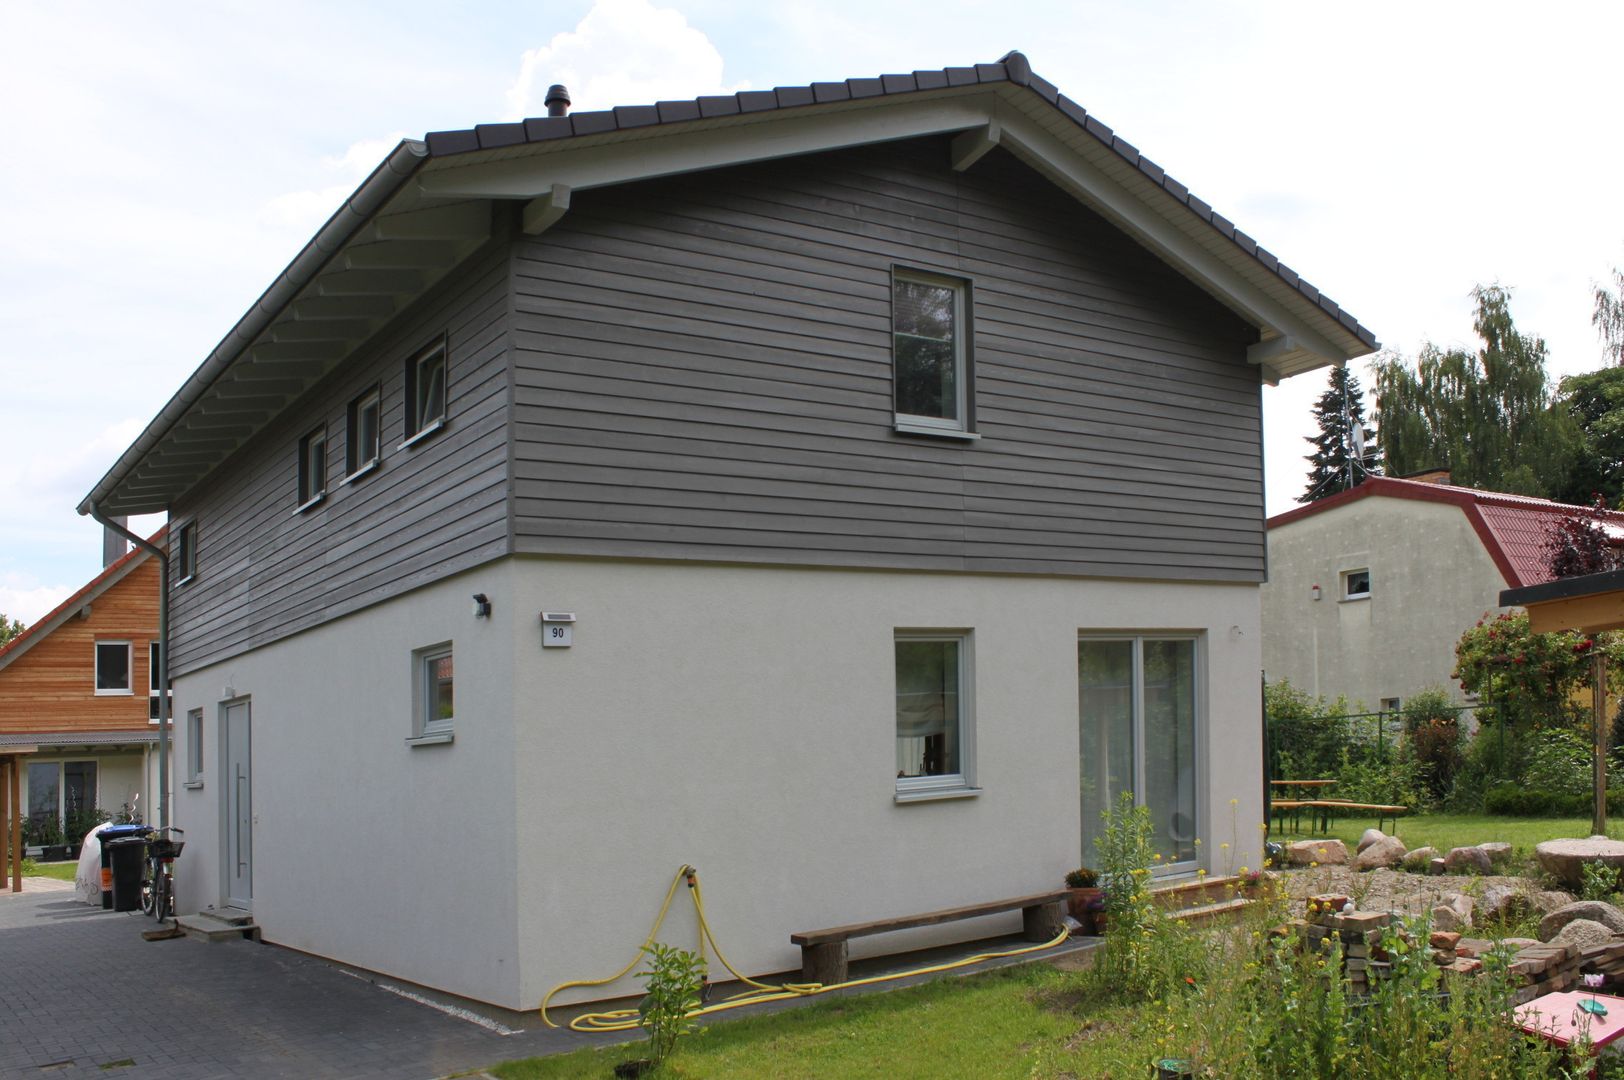 Wohngesundes Holzhaus - modern und kostengünstig, Neues Gesundes Bauen Neues Gesundes Bauen 모던스타일 주택